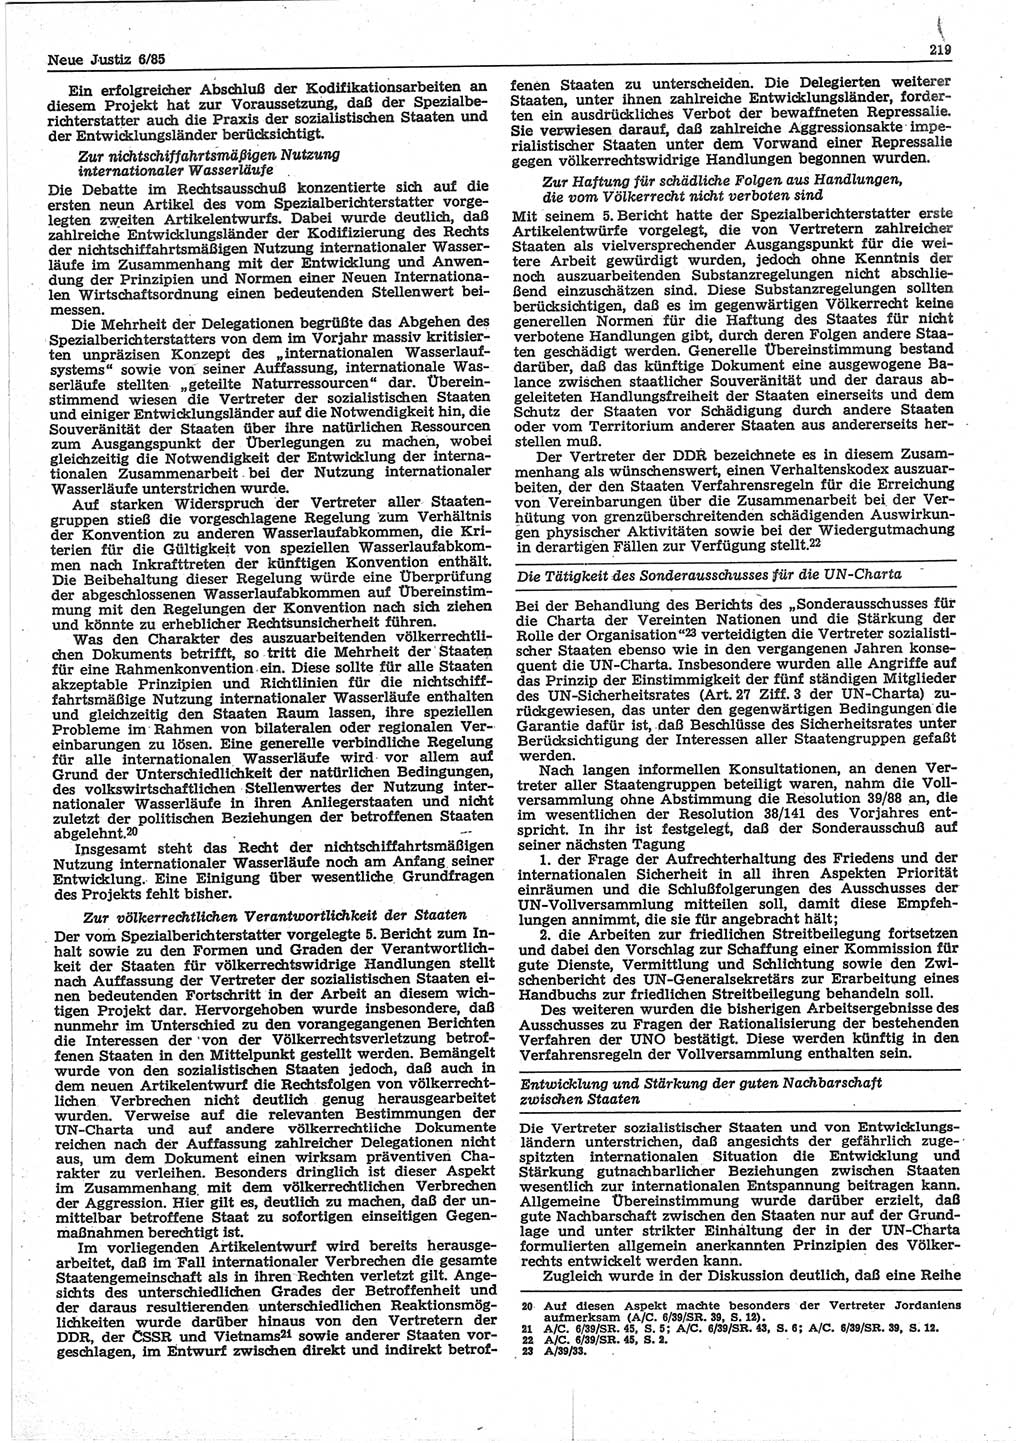 Neue Justiz (NJ), Zeitschrift für sozialistisches Recht und Gesetzlichkeit [Deutsche Demokratische Republik (DDR)], 39. Jahrgang 1985, Seite 219 (NJ DDR 1985, S. 219)